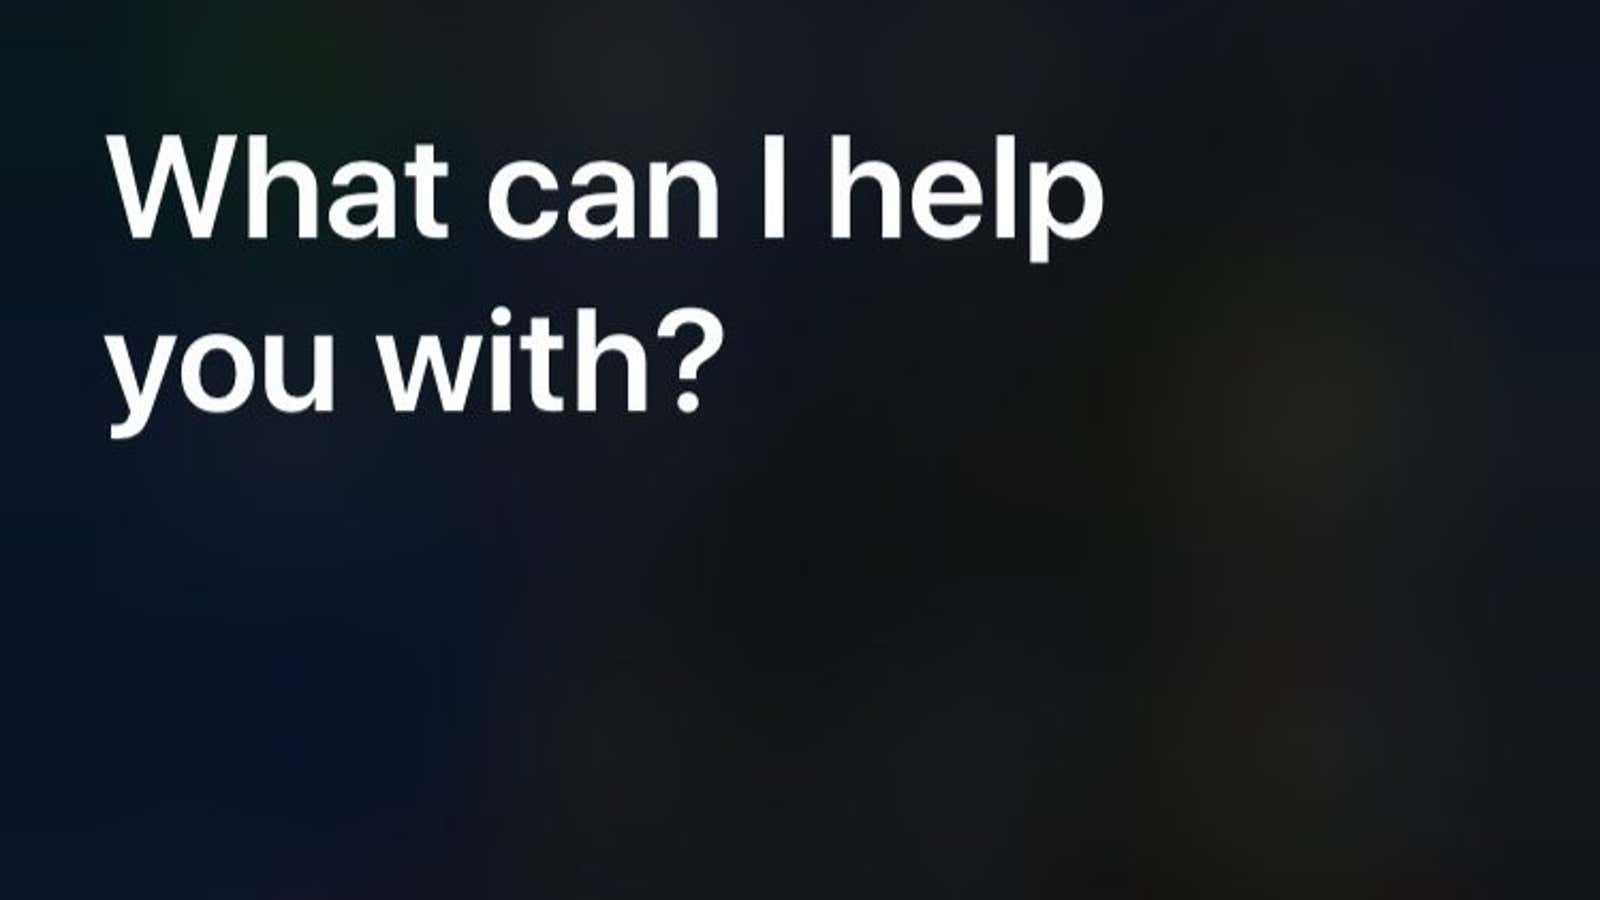 You tell me, Siri.